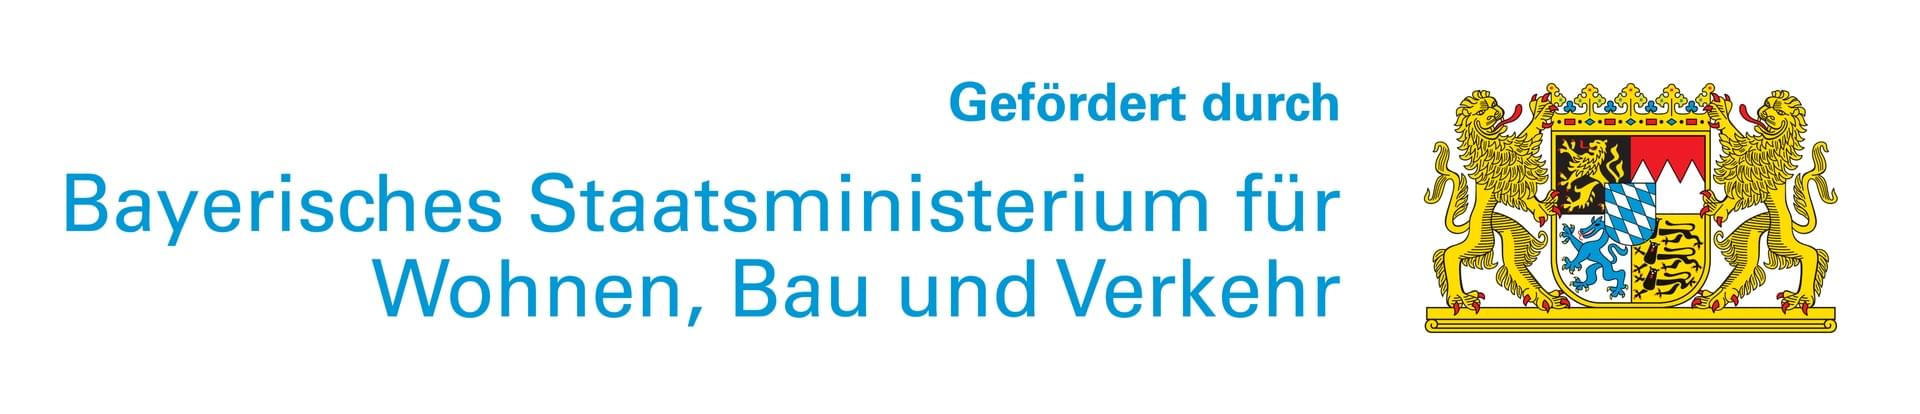 Logo Bayrisches Staatsministerium für Wohnen, Bau und Verkehr